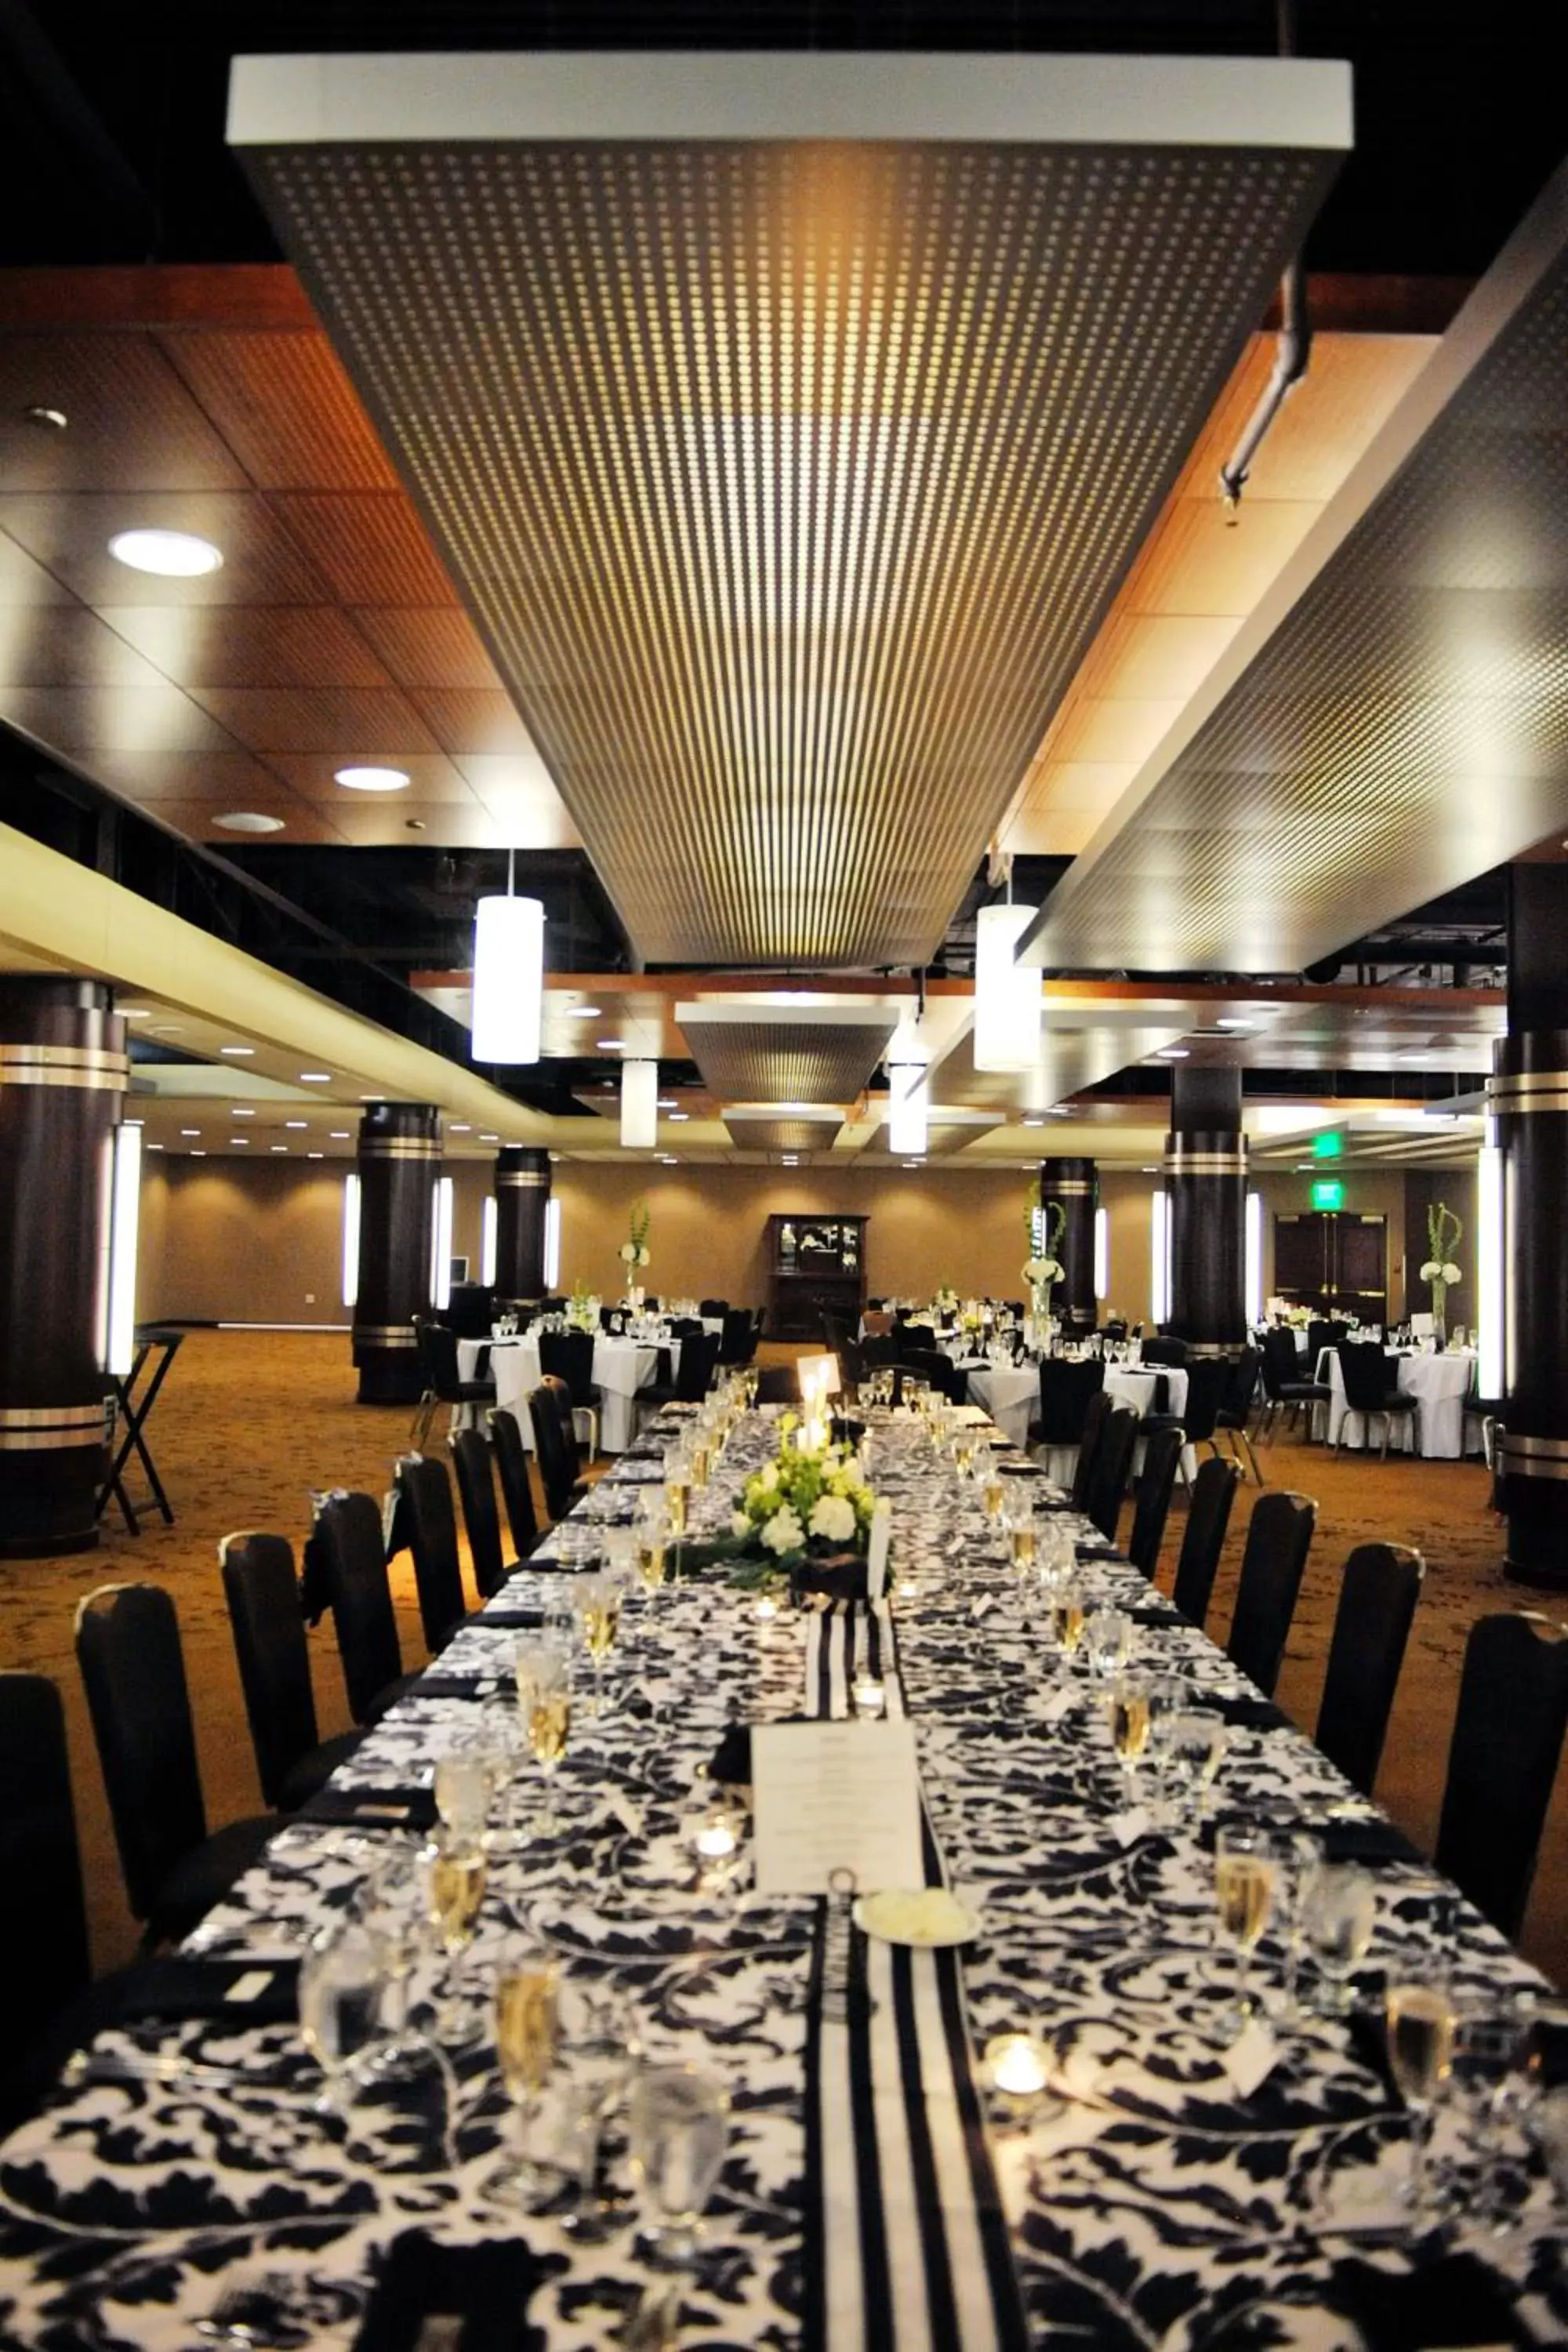 Banquet/Function facilities, Banquet Facilities in Radisson Plaza Hotel at Kalamazoo Center